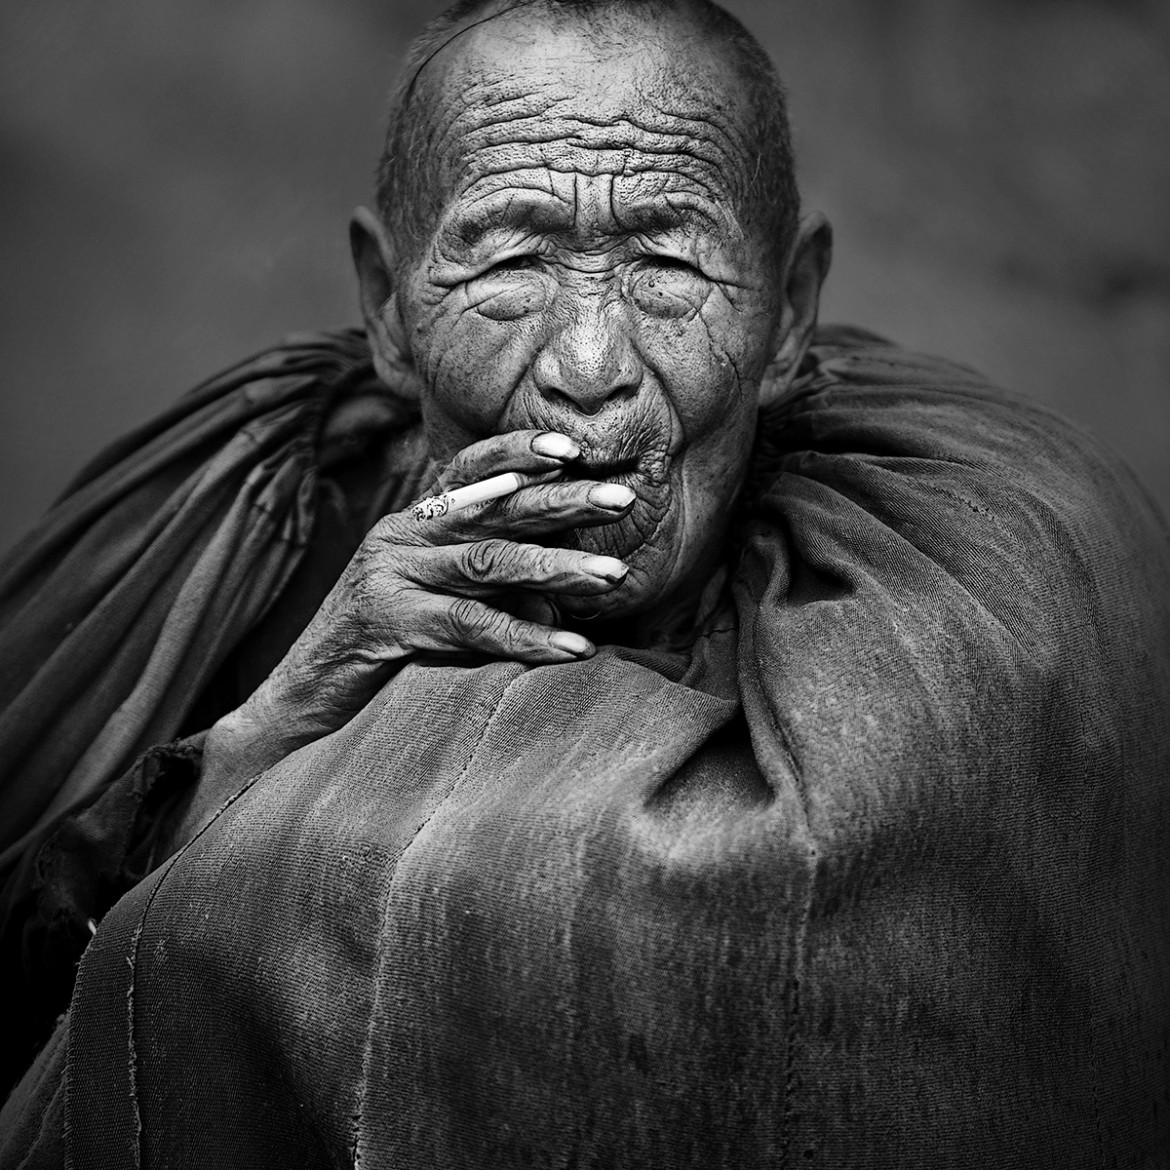 fot. Ruiyuan Chen, 1. miejsce w kategorii Mankind Portfolio / tpoty.com